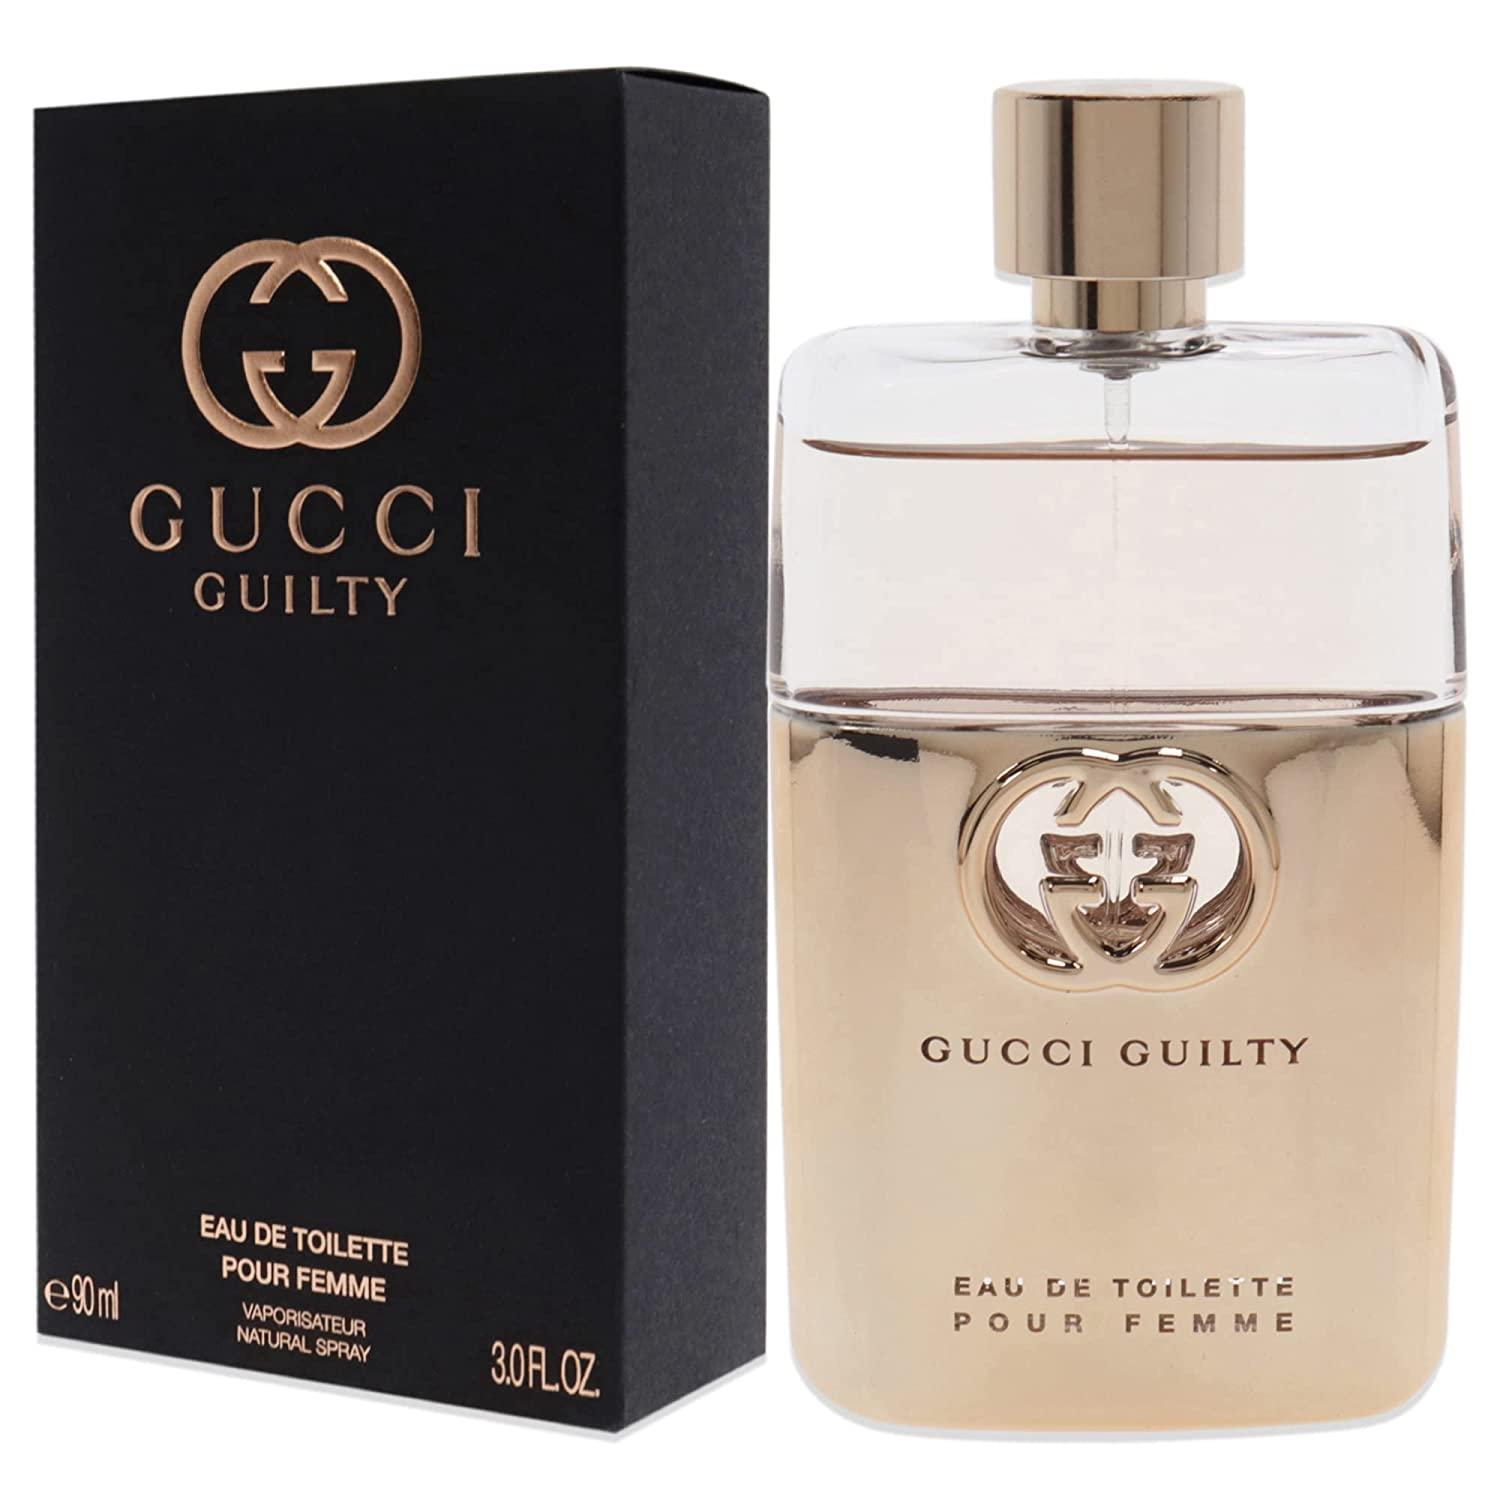 Gucci Guilty Love Edition by Gucci Eau De Parfum Spray 3 oz (Women), 1 -  Baker's